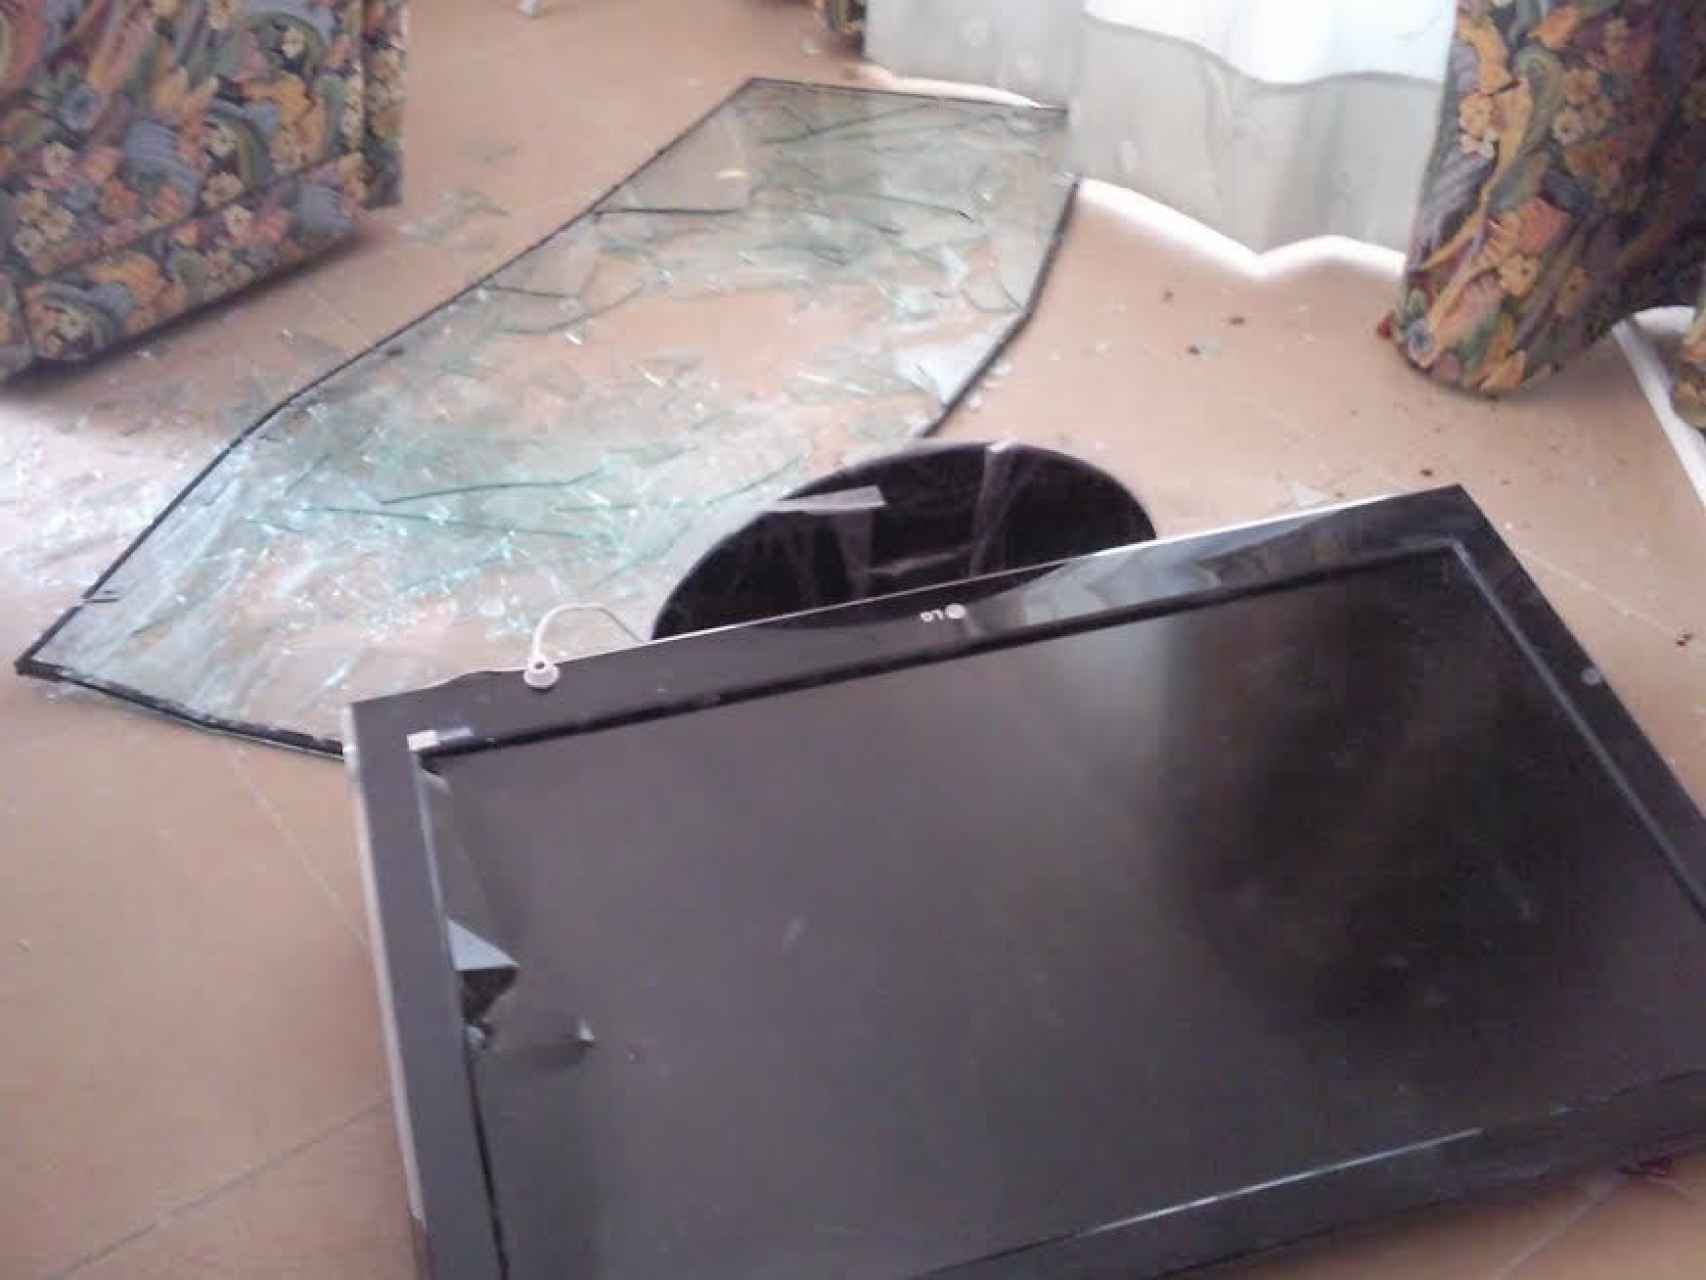 La Policía Científica encontró restos de sangre en el televisor de la casa de Casimiro Villegas, aunque no sirvió para detener al quinto asaltante.